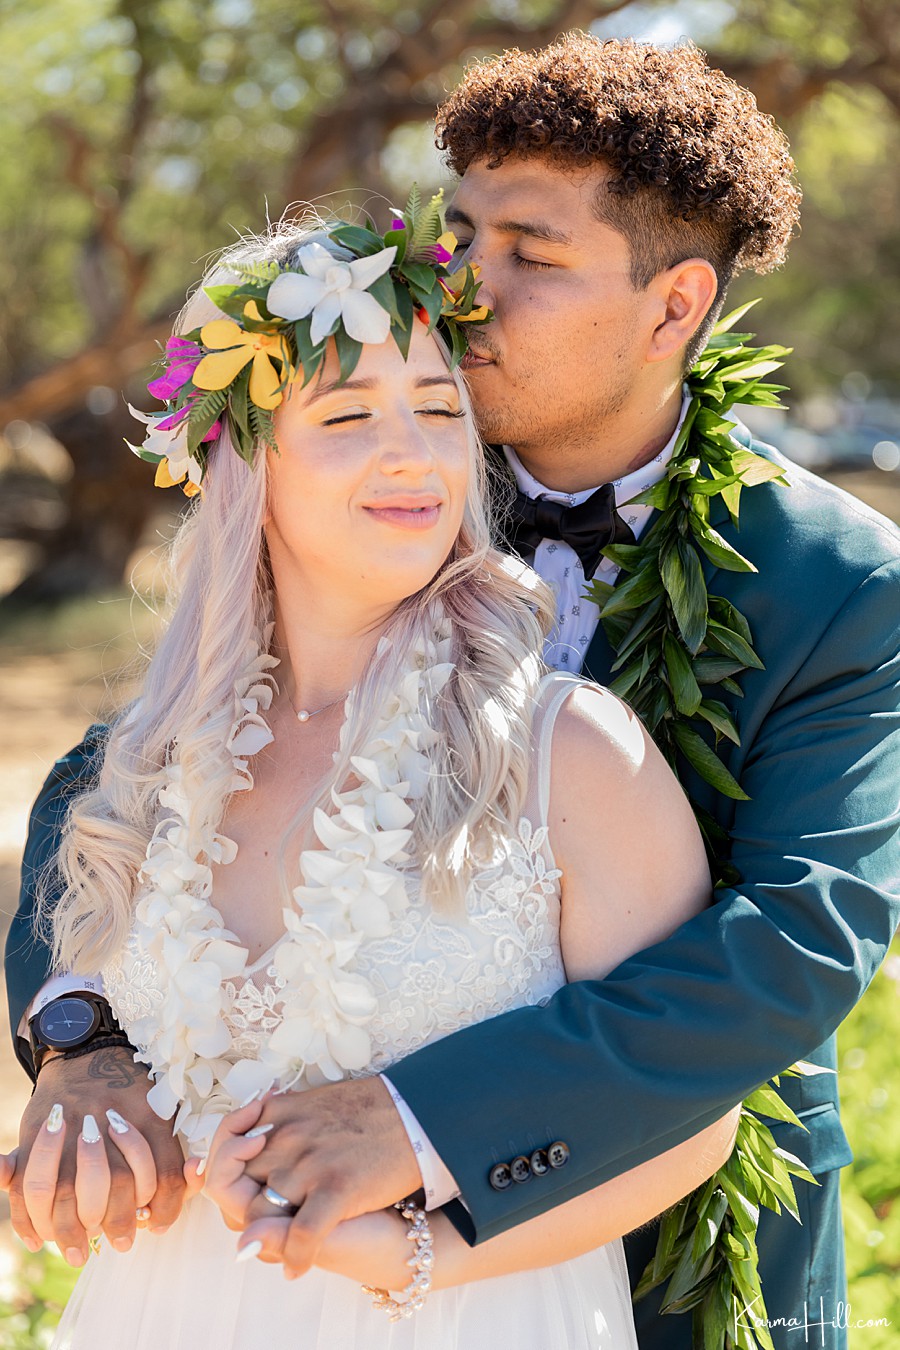 Hawaii wedding photography
